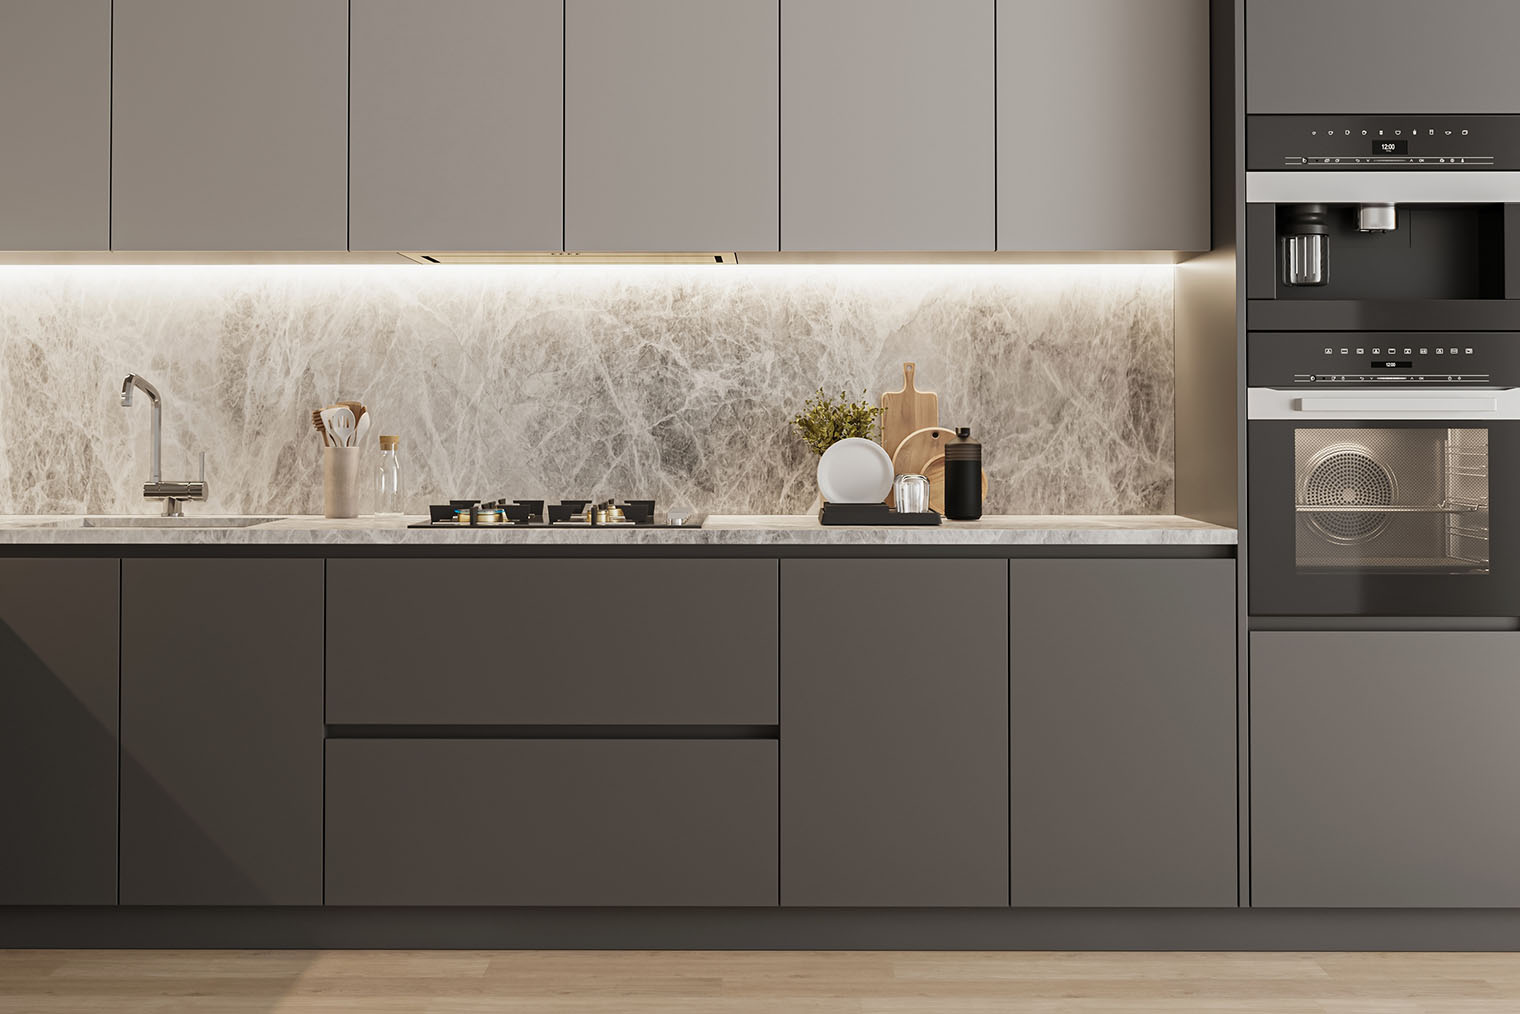 Оттенки серого — универсальный вариант для минималистичной кухни в среднем сегменте. Выбирайте верхние ящики в более светлом оттенке, чтобы они казались легче. Фотография: Shcherban Oleksandr / Shutterstock